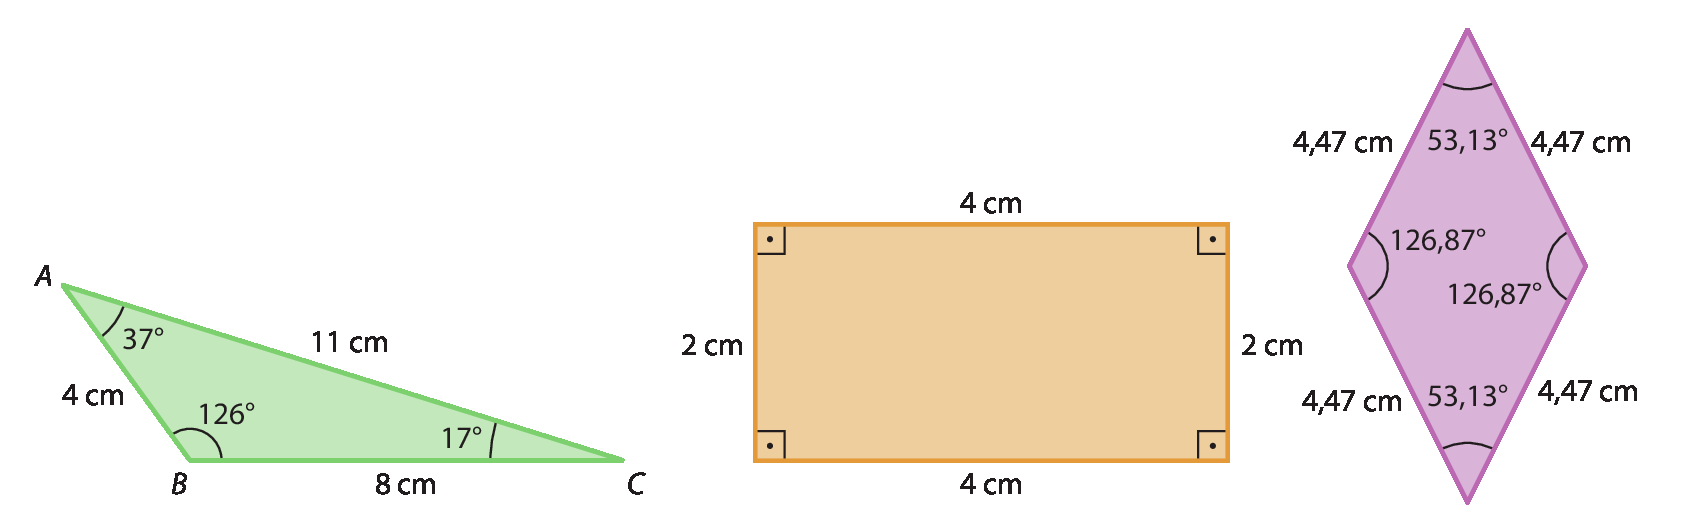 Ilustração.
Triângulo formado de vértices A, B e C. 

Entre A e B, 4 centímetros. 
Entre B e C, 8 centímetros.
Entre C e B, 11 centímetros. 

O ângulo em A tem 37 graus, o ângulo em B tem 126 graus e o ângulo em C tem 17 graus.
Ilustração.
Retângulo.
Lado horizontal, medindo 4 centímetros.
Lado vertical, medindo 2 centímetros. 
Marcações de ângulos de 90 graus internamente.
Ilustração.
Losango com todos os lados medindo 4,47 centímetros. 
Dois ângulos têm 53,13 graus, e os outros têm 126,87 graus.